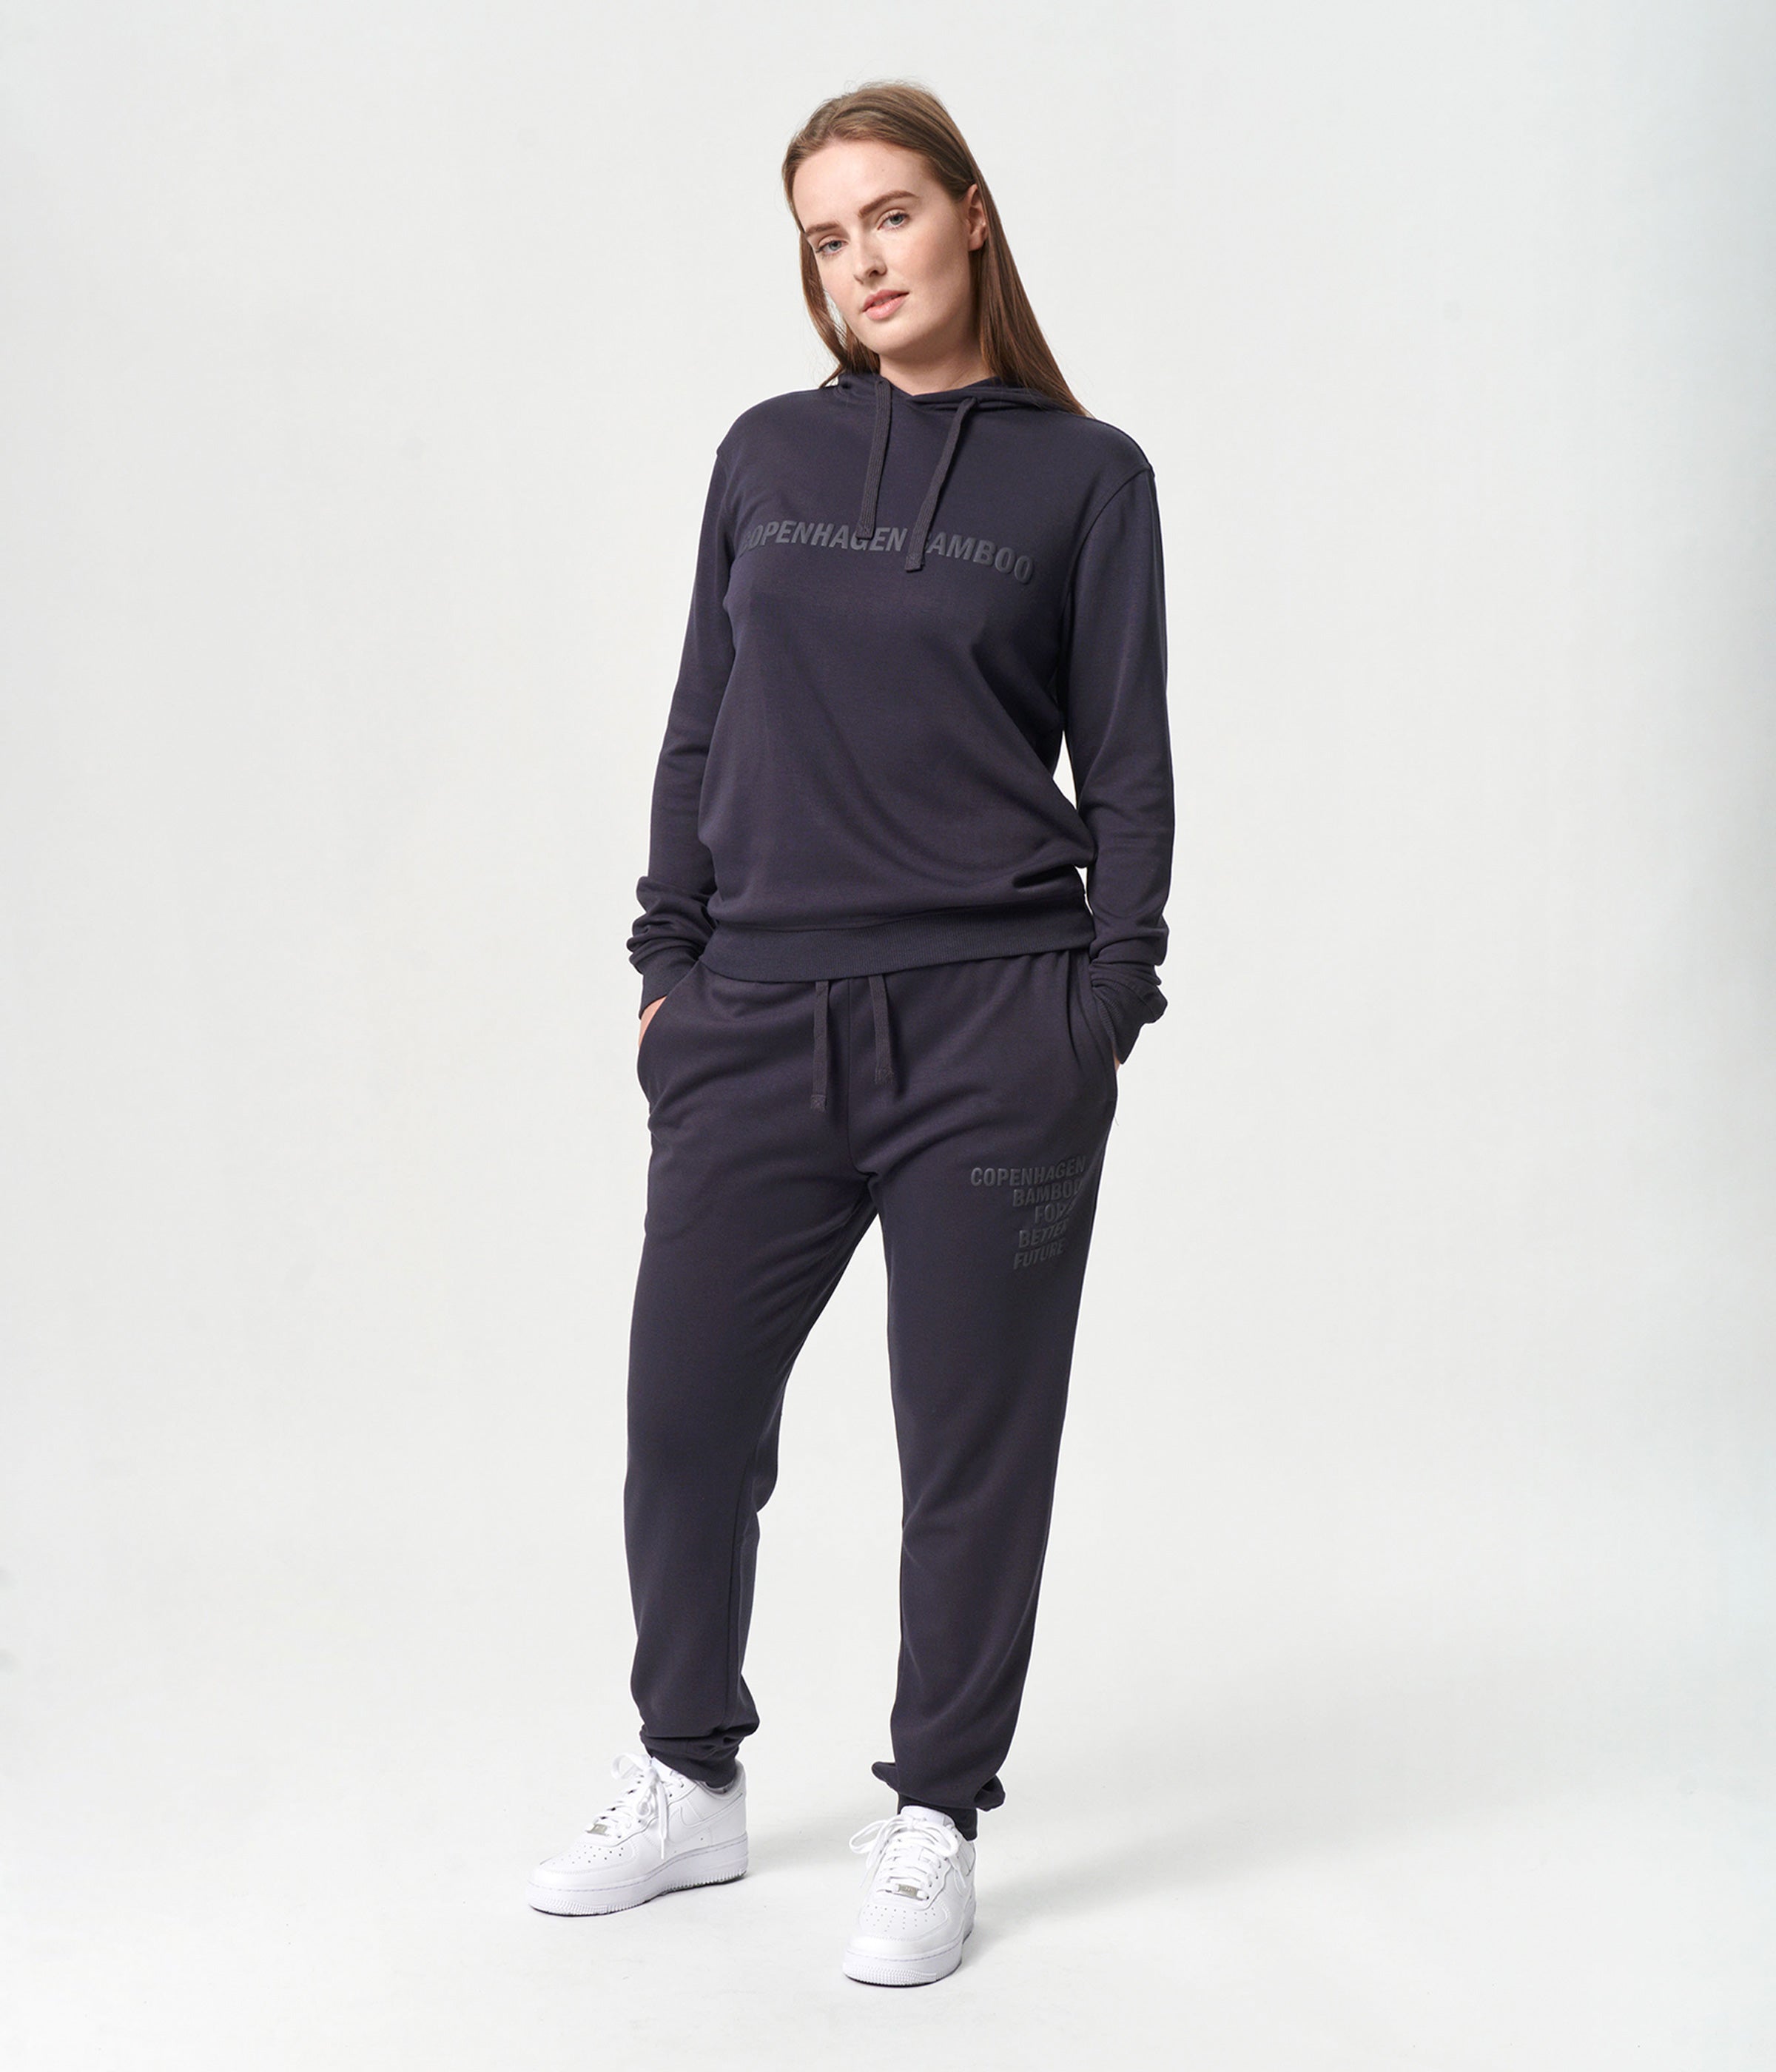 Billede af Bambus hoodie joggingsæt i mørkegrå med logo til damer fra Copenhagen Bamboo, XS